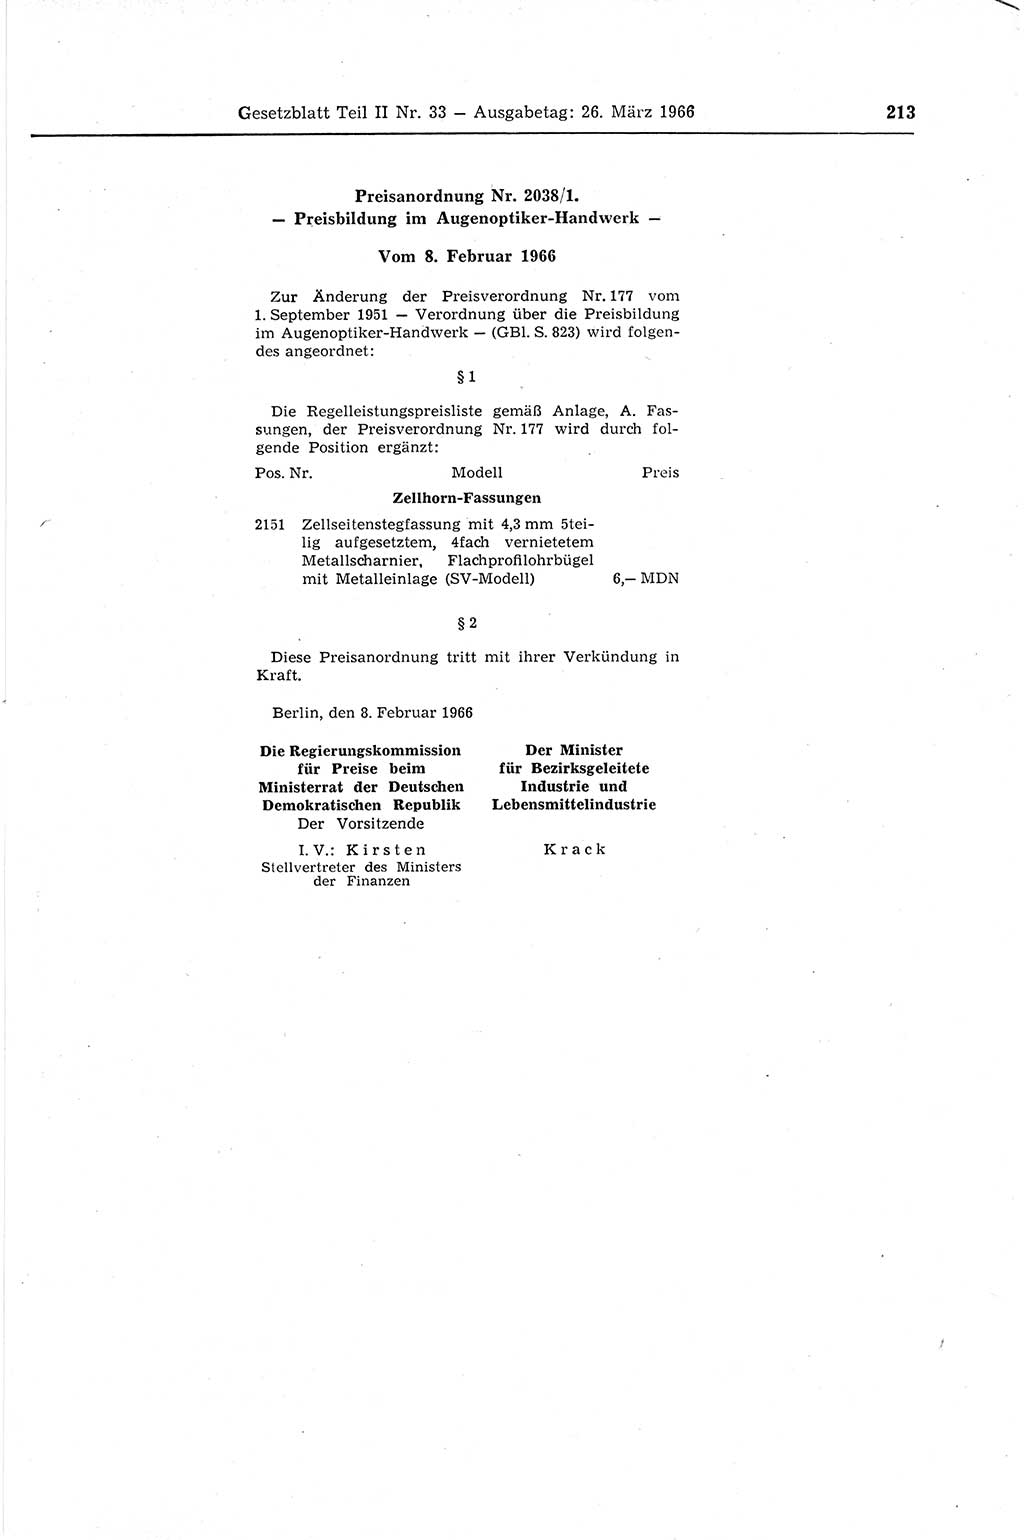 Gesetzblatt (GBl.) der Deutschen Demokratischen Republik (DDR) Teil ⅠⅠ 1966, Seite 213 (GBl. DDR ⅠⅠ 1966, S. 213)